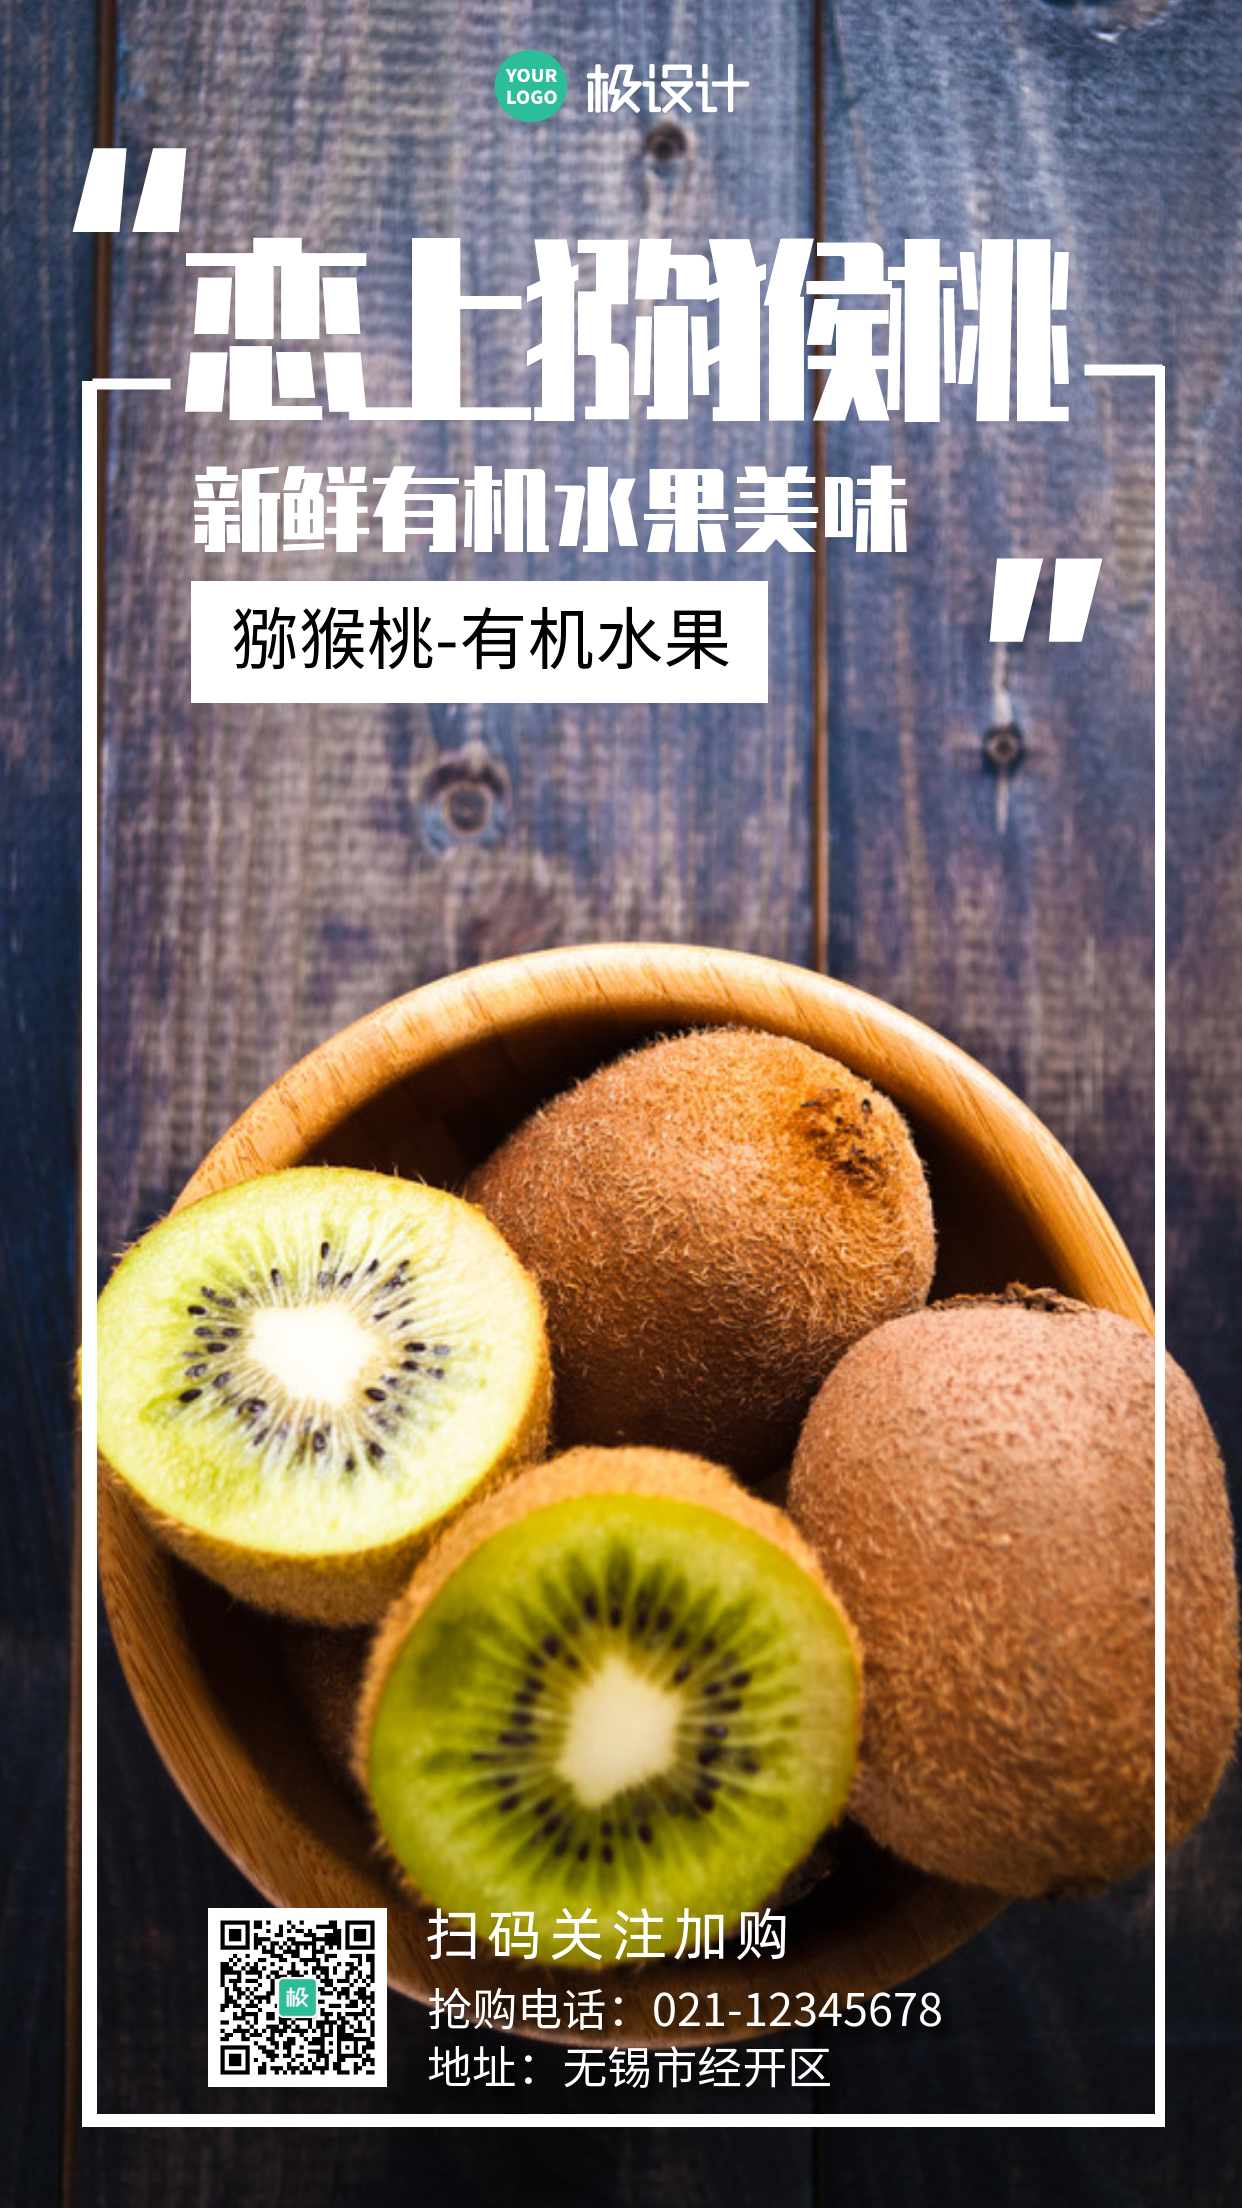 猕猴桃产品宣传摄影简约大气手机营销海报